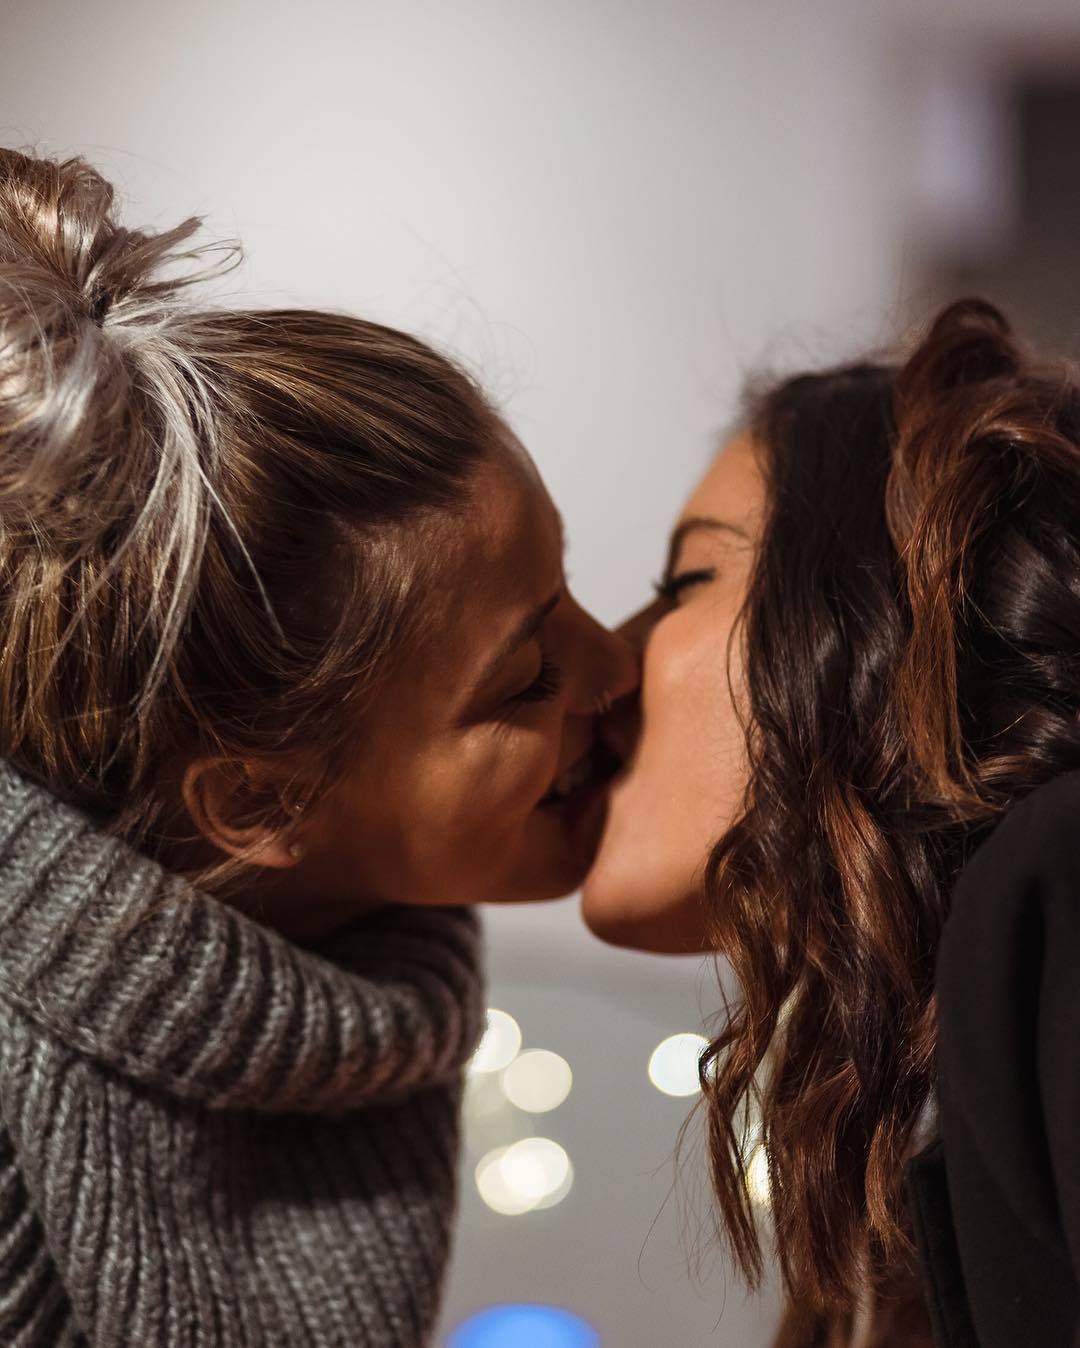 Lesbian little girl. Любовь двух женщин. Поцелуй девушек. Девушки целуются. Красивый поцелуй двух девушек.